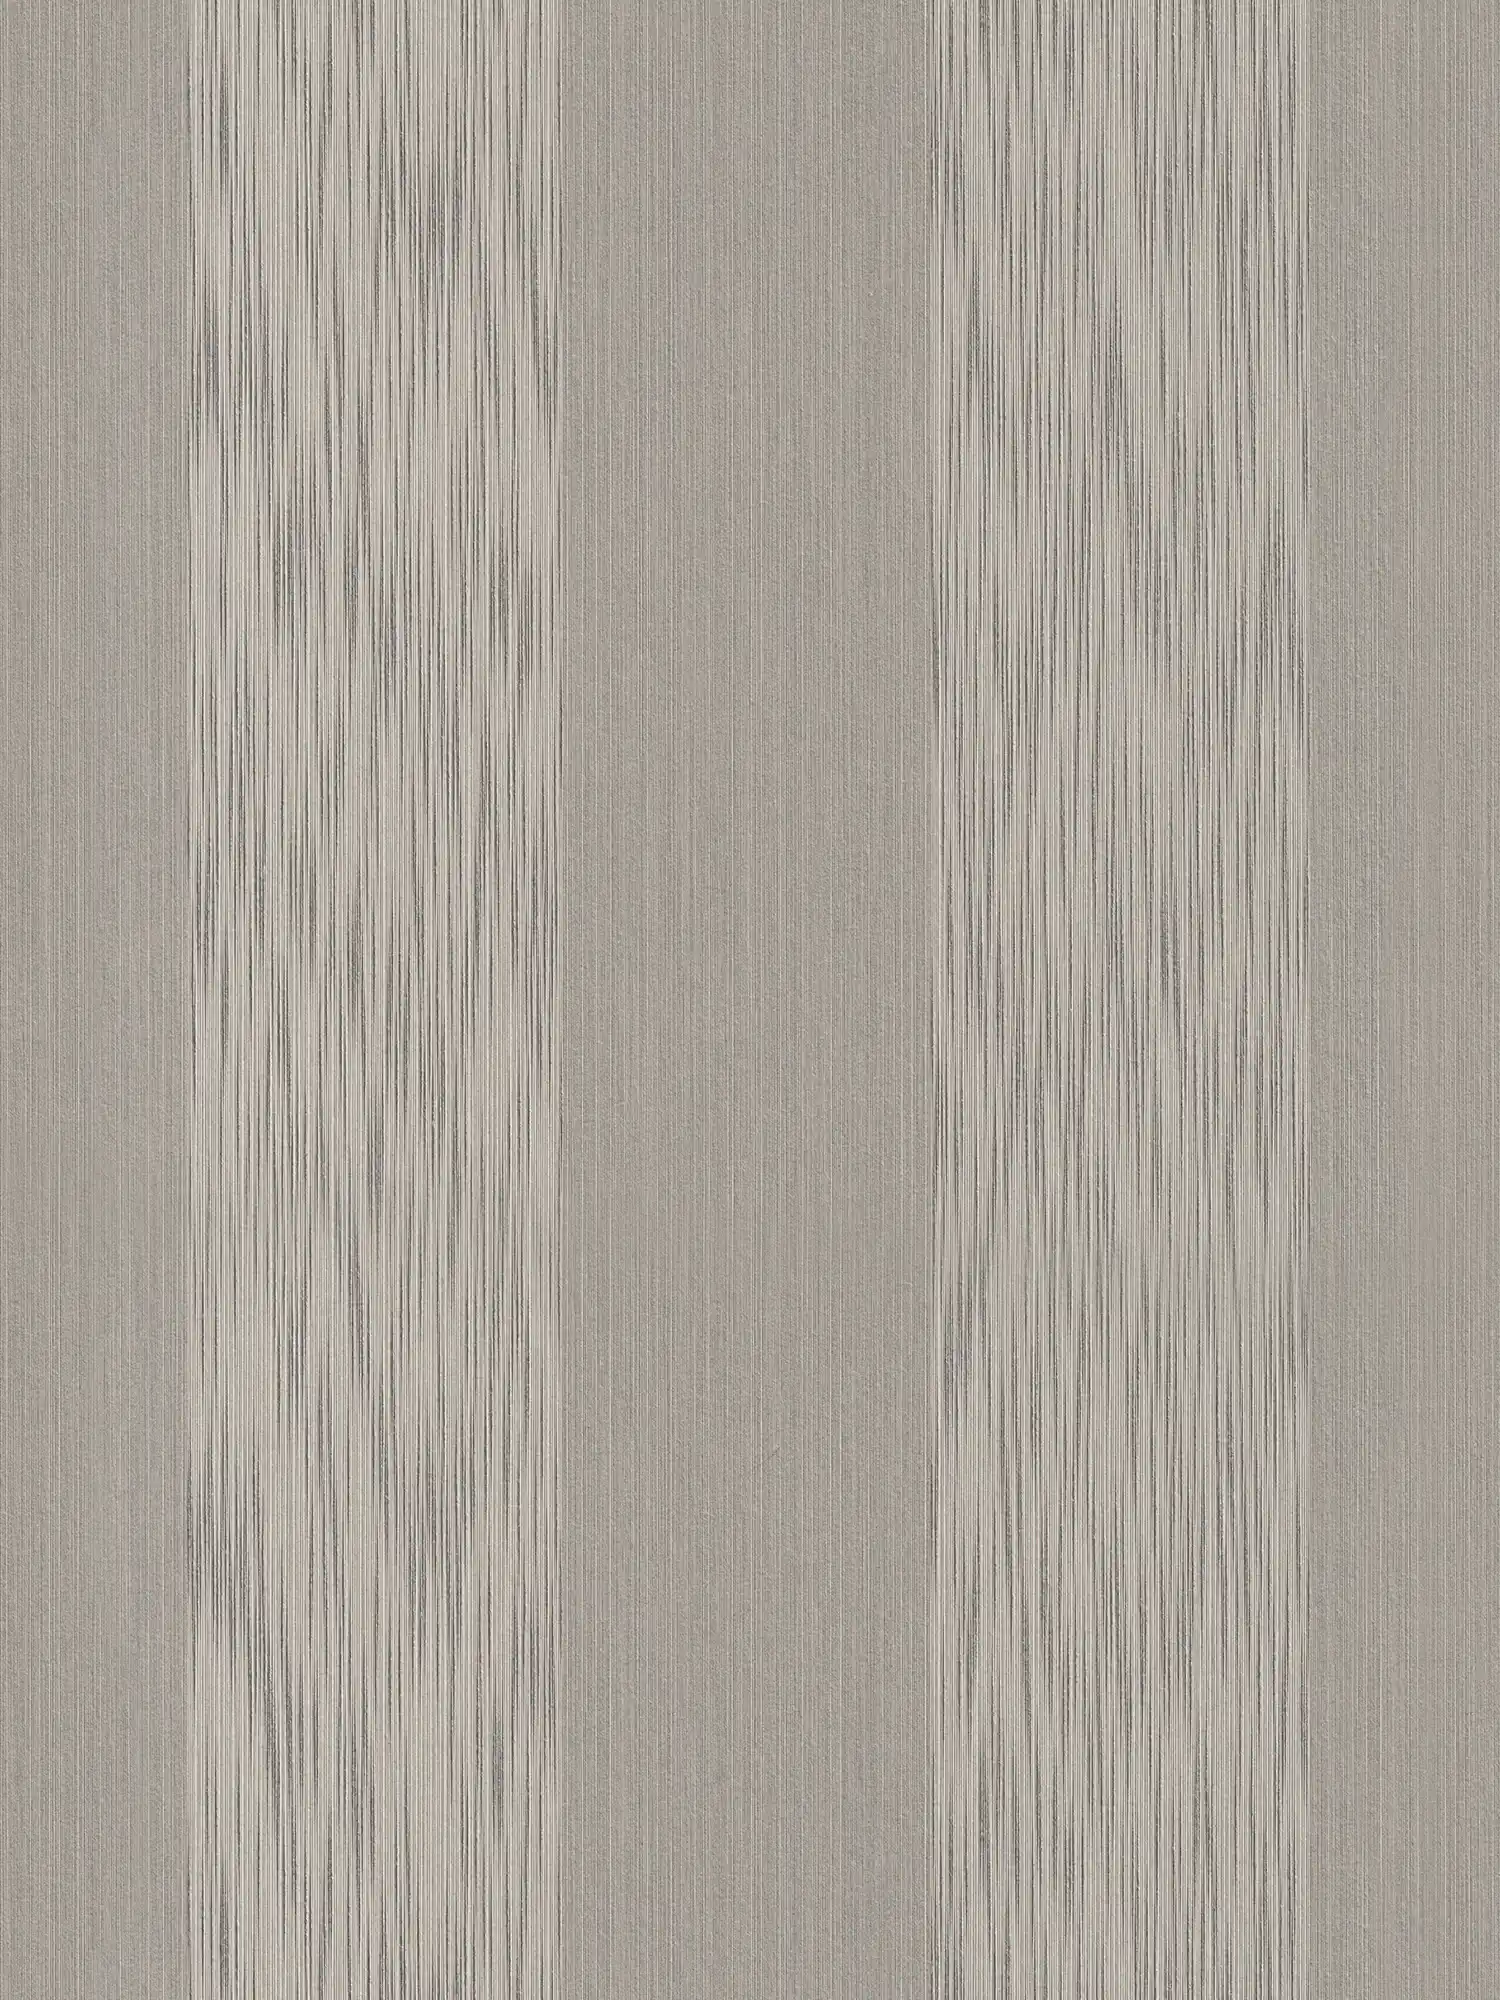 Melange strepen behang met textuureffect - grijs
